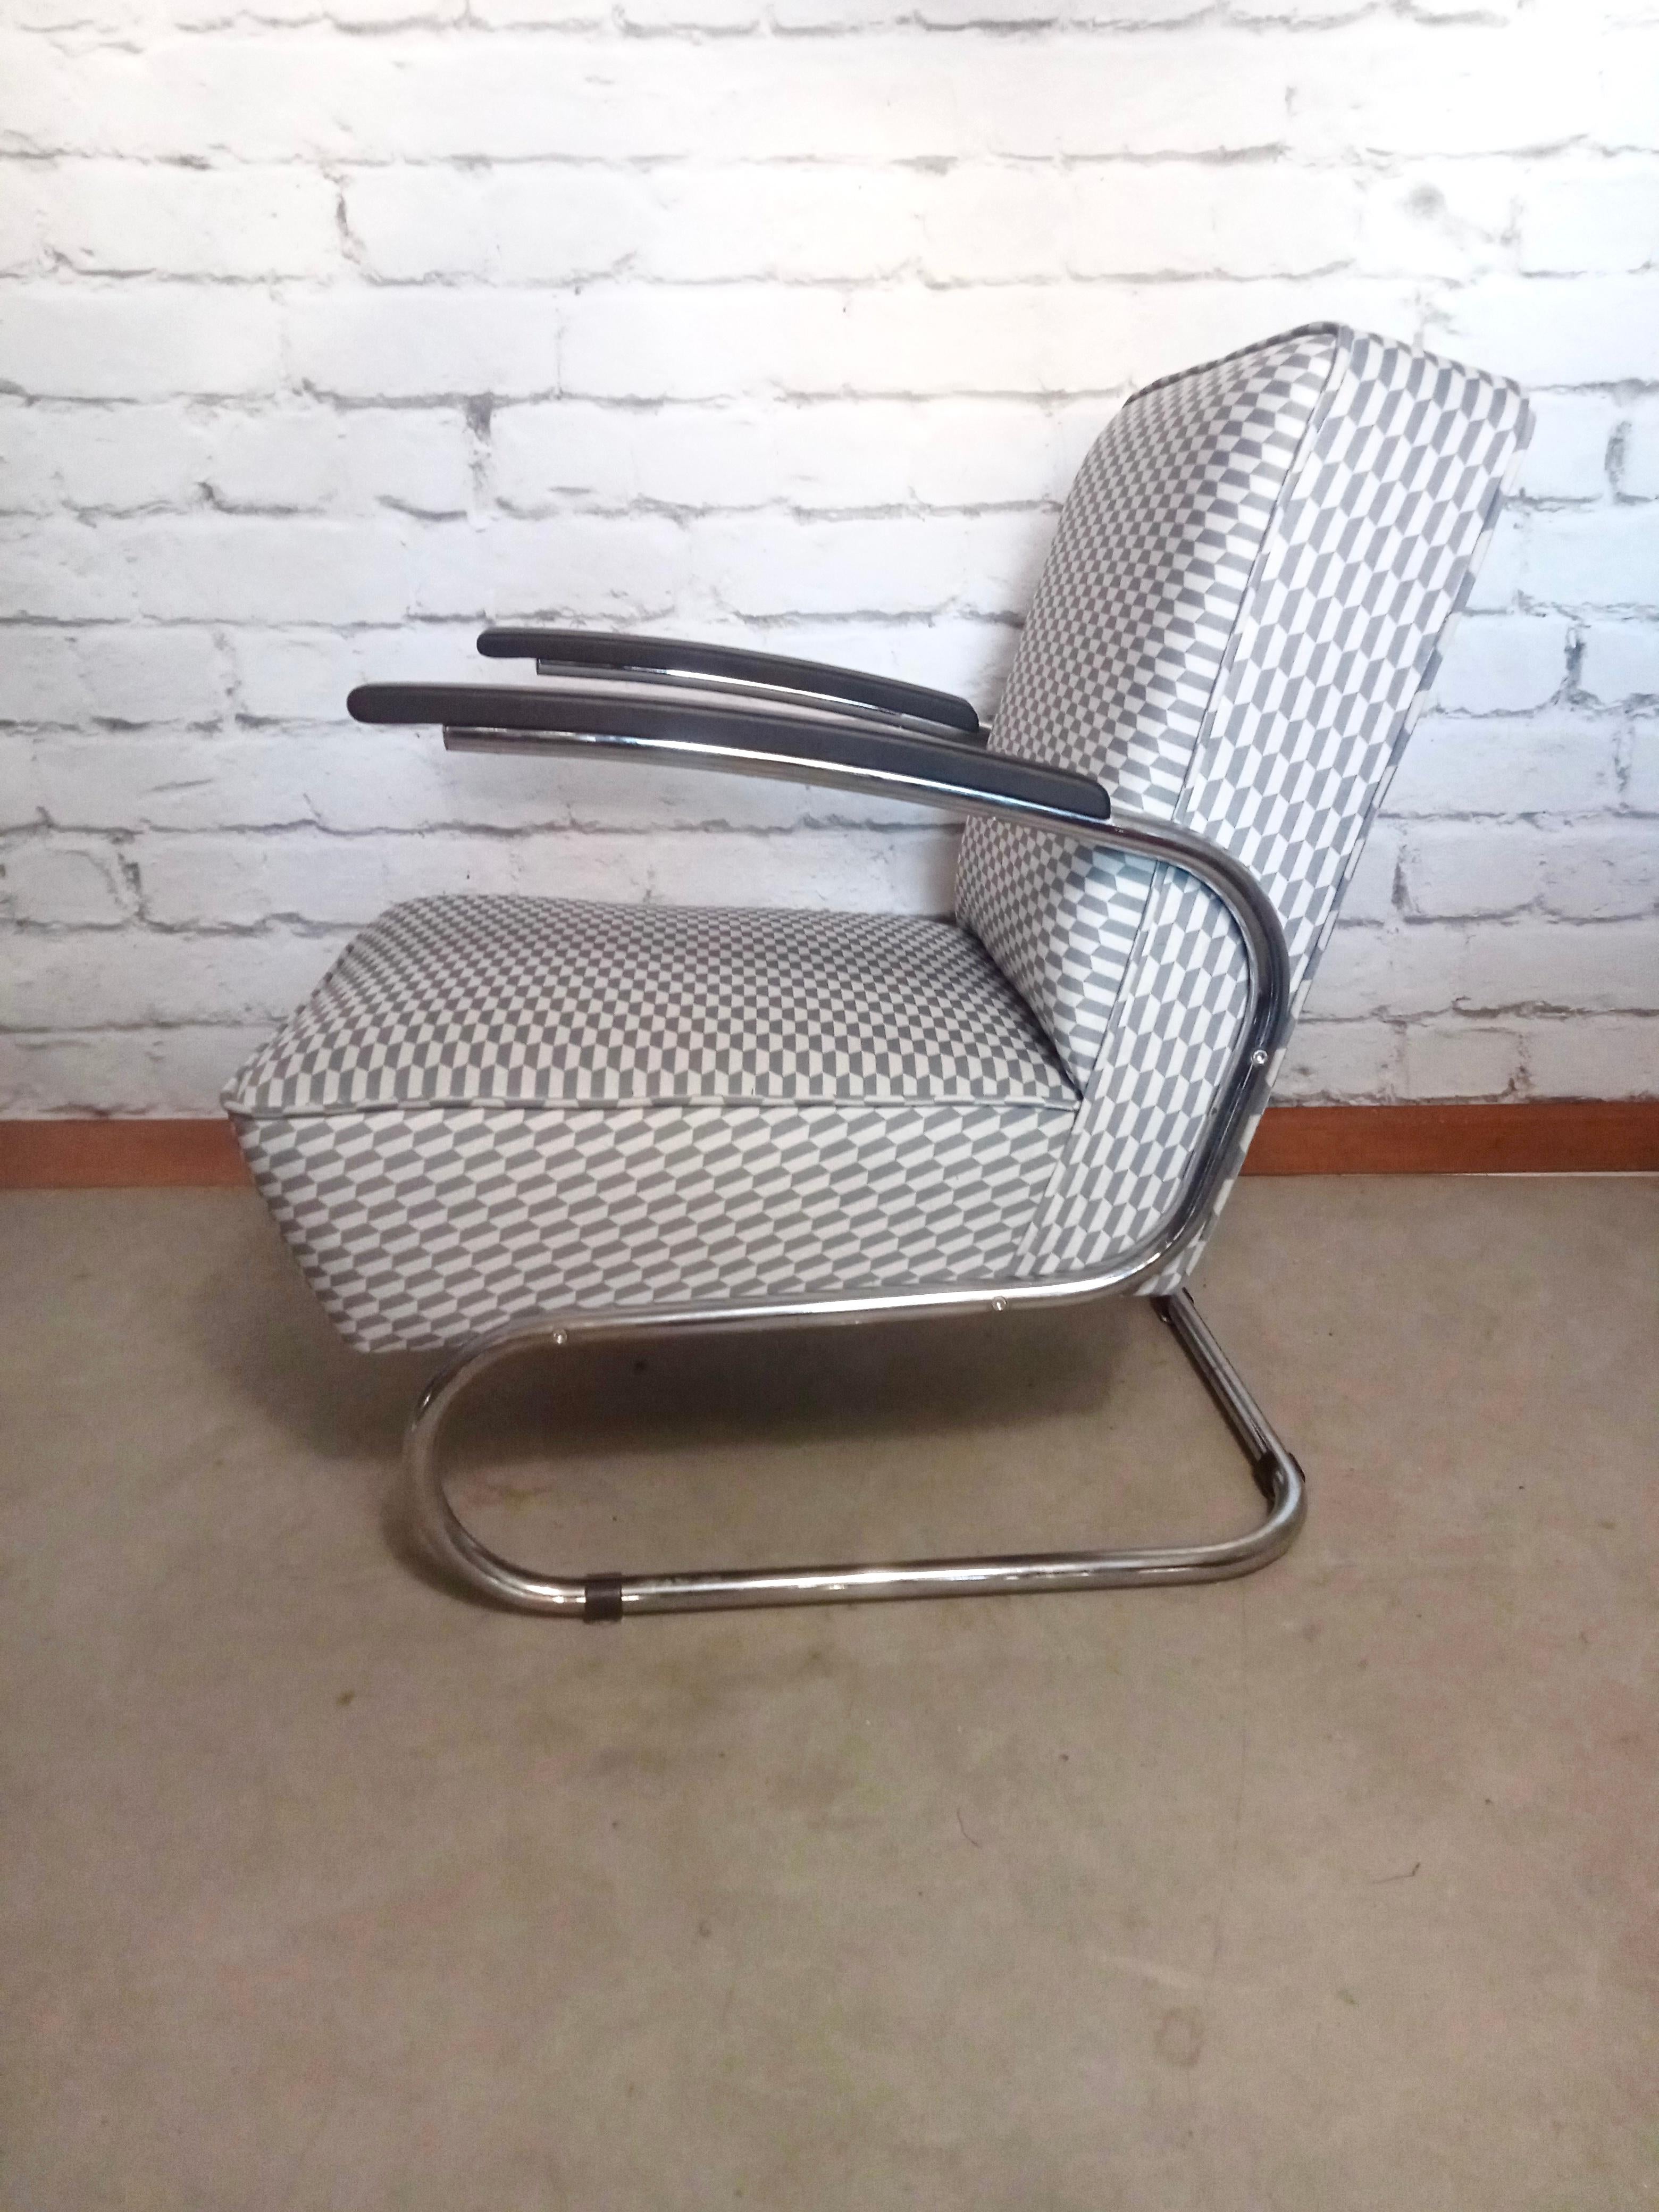 Die herausragenden Eigenschaften dieses Sessels sind Eleganz, Zeitlosigkeit und außergewöhnlicher Sitzkomfort. Hinzu kommt eine Leichtigkeit, die nur ein freitragendes Modell haben kann. Entworfen 1932 vom Thonet Designteam. Zweifelsohne eine der